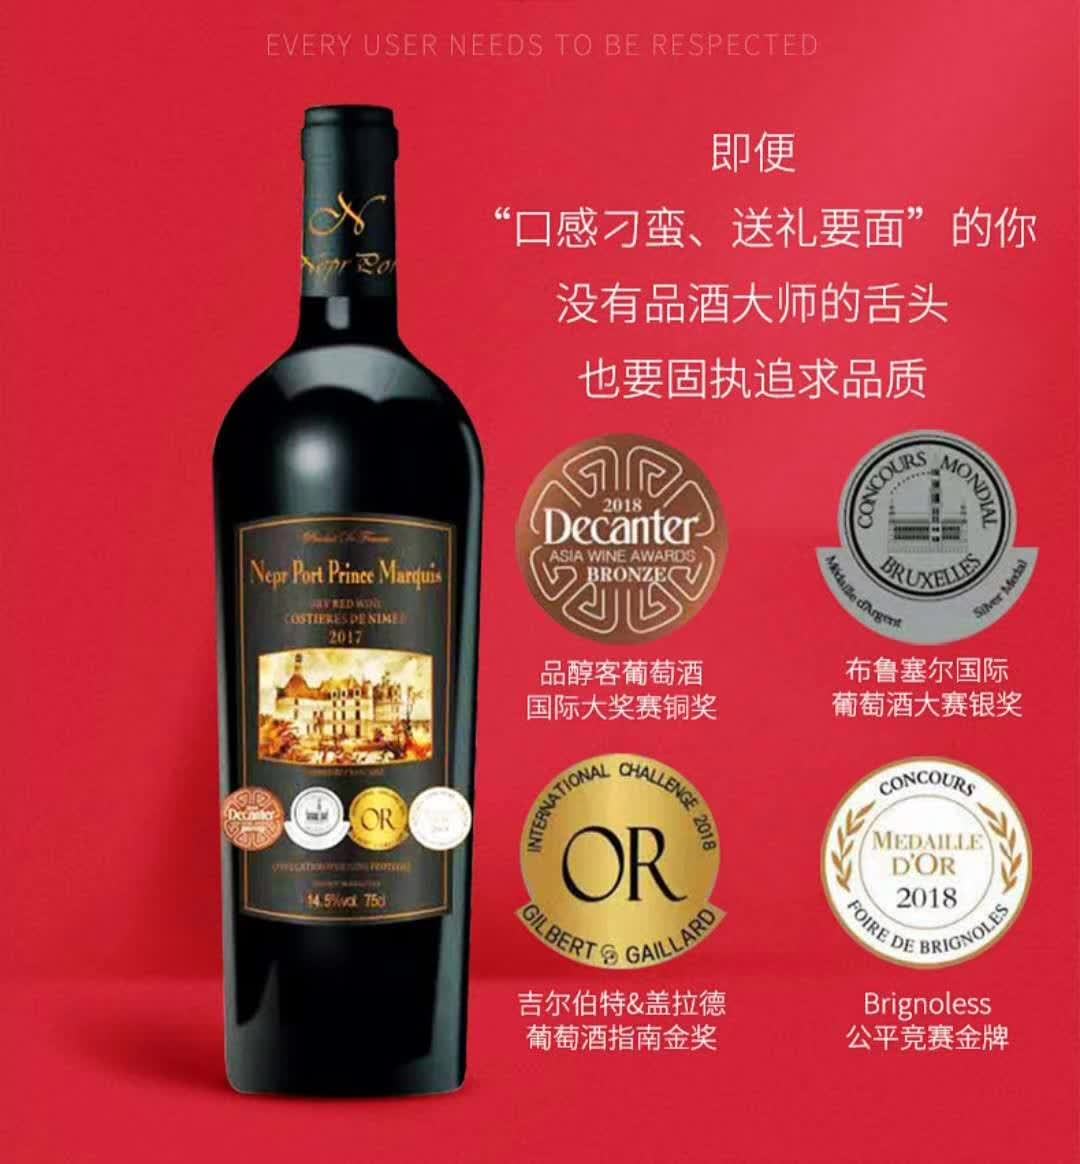 上海万耀诺波特系列王爵干红葡萄酒现货供应法国原装进口AOP级别混酿葡萄酒进口酒水代理加盟